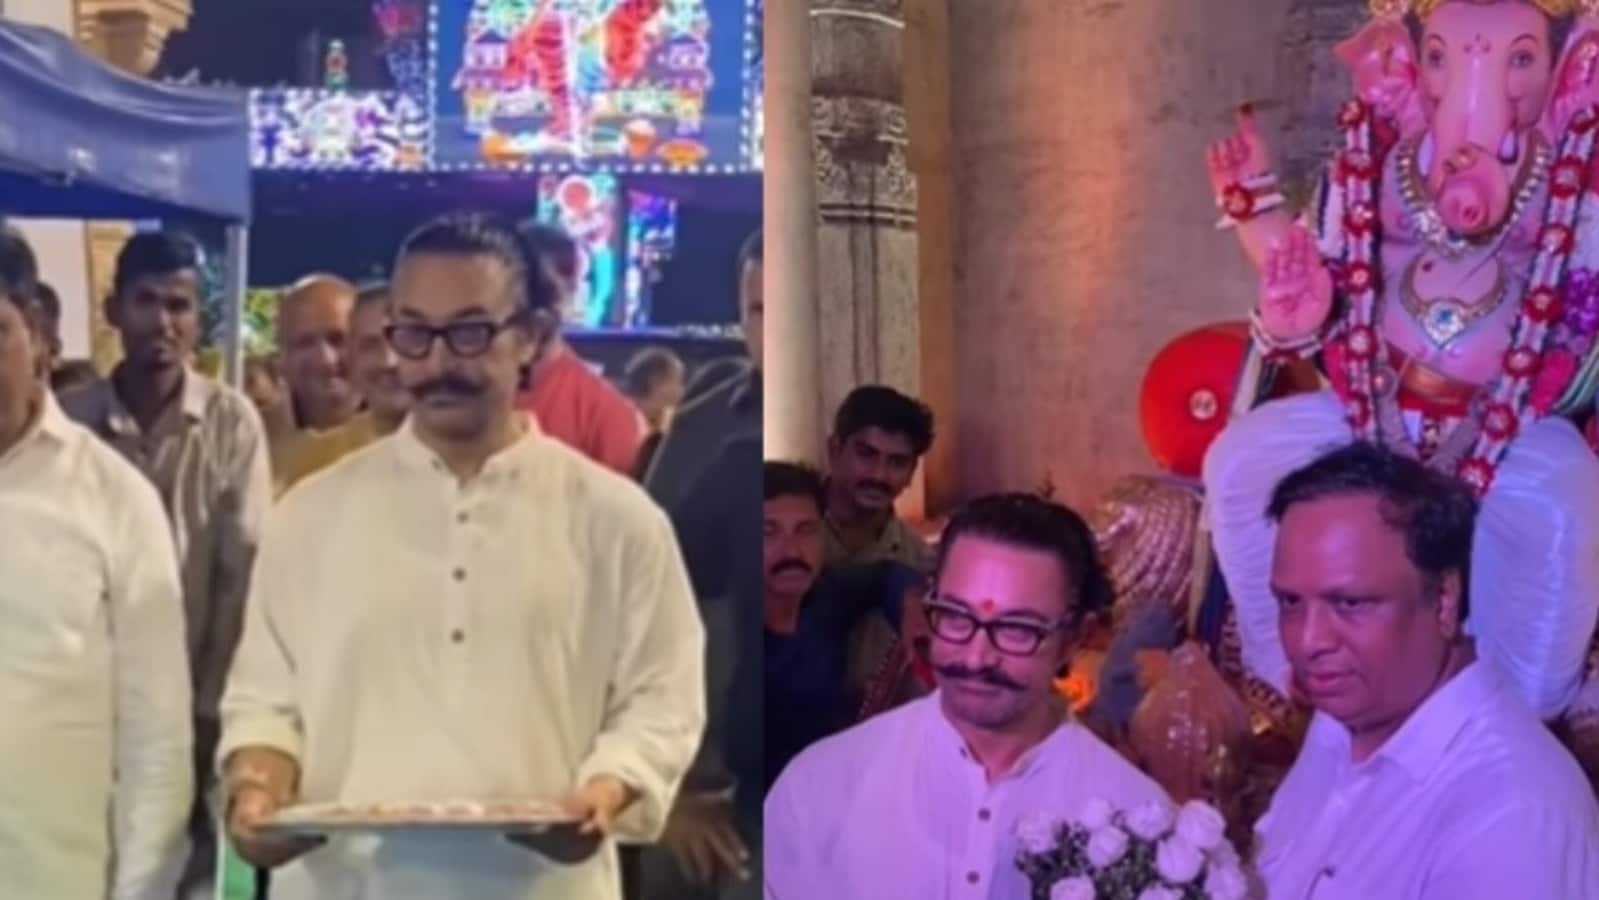 गणपति दर्शन के लिए मुंबई बीजेपी अध्यक्ष के घर पहुंचने पर आमिर खान ने मिठाई खिलाकर उनका स्वागत किया।  घड़ी